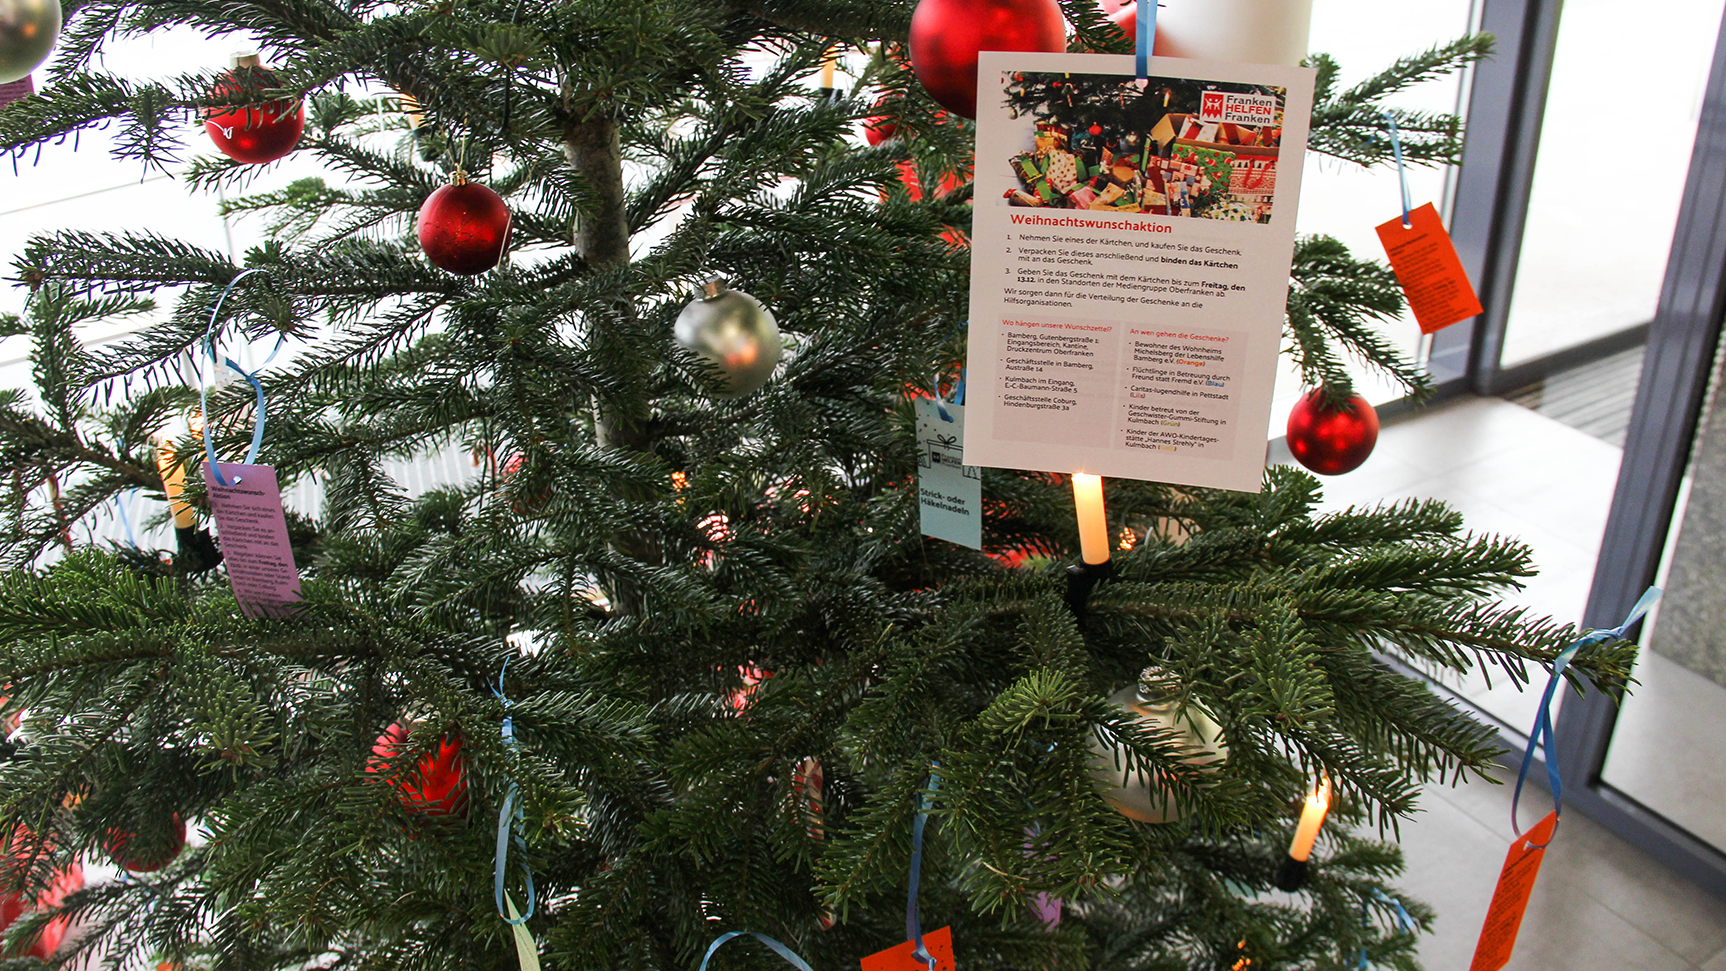 Wunschzettel am Weihnachtsbaum im Standort Bamberg.